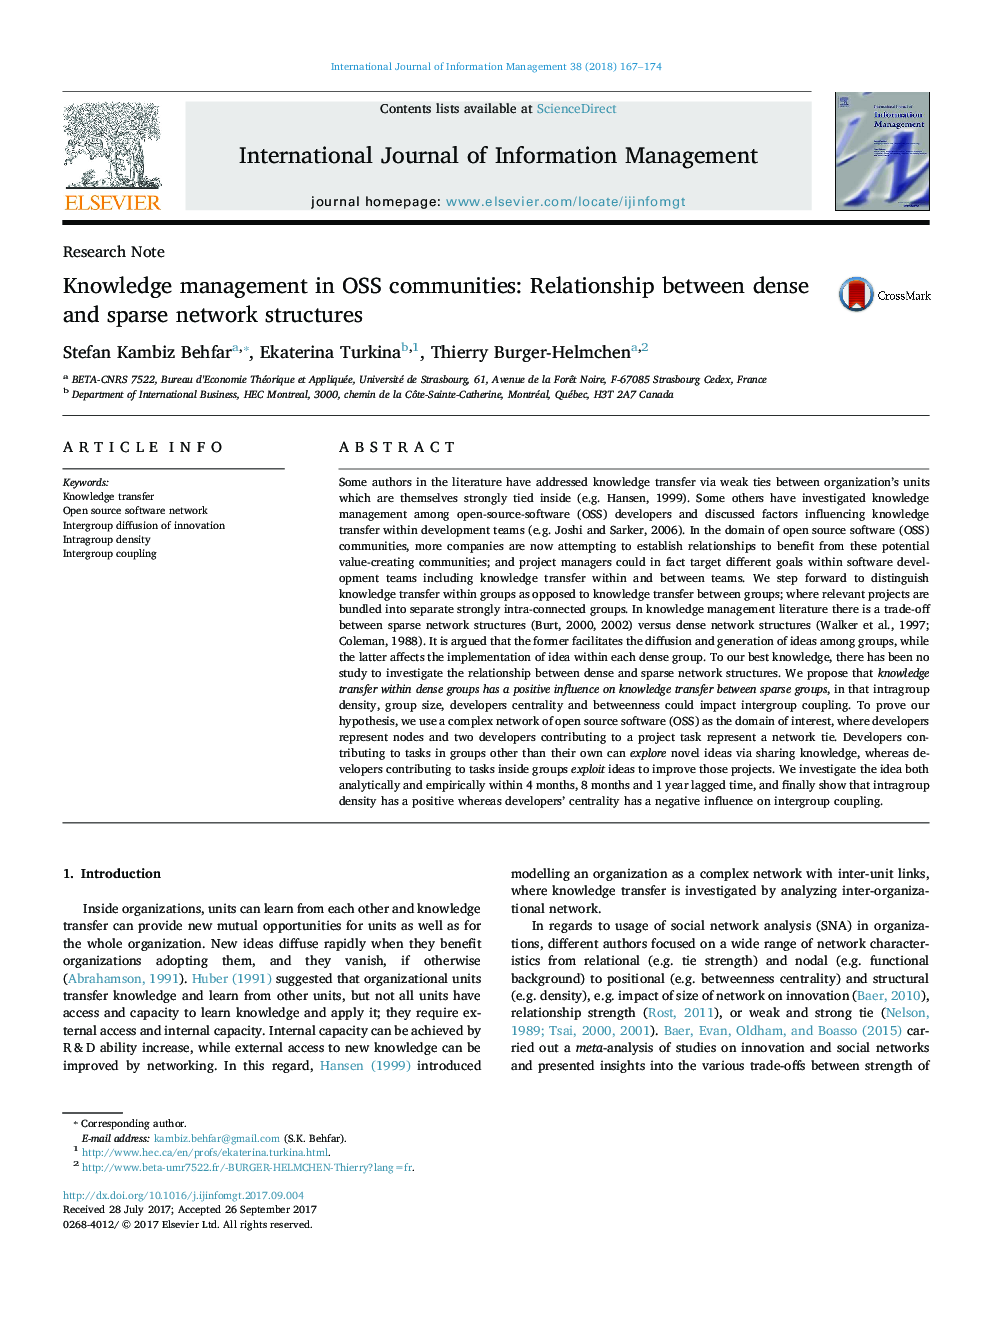 مدیریت دانش در جوامع OSS: ارتباط ساختارهای شبکه ای ضعیف و کم